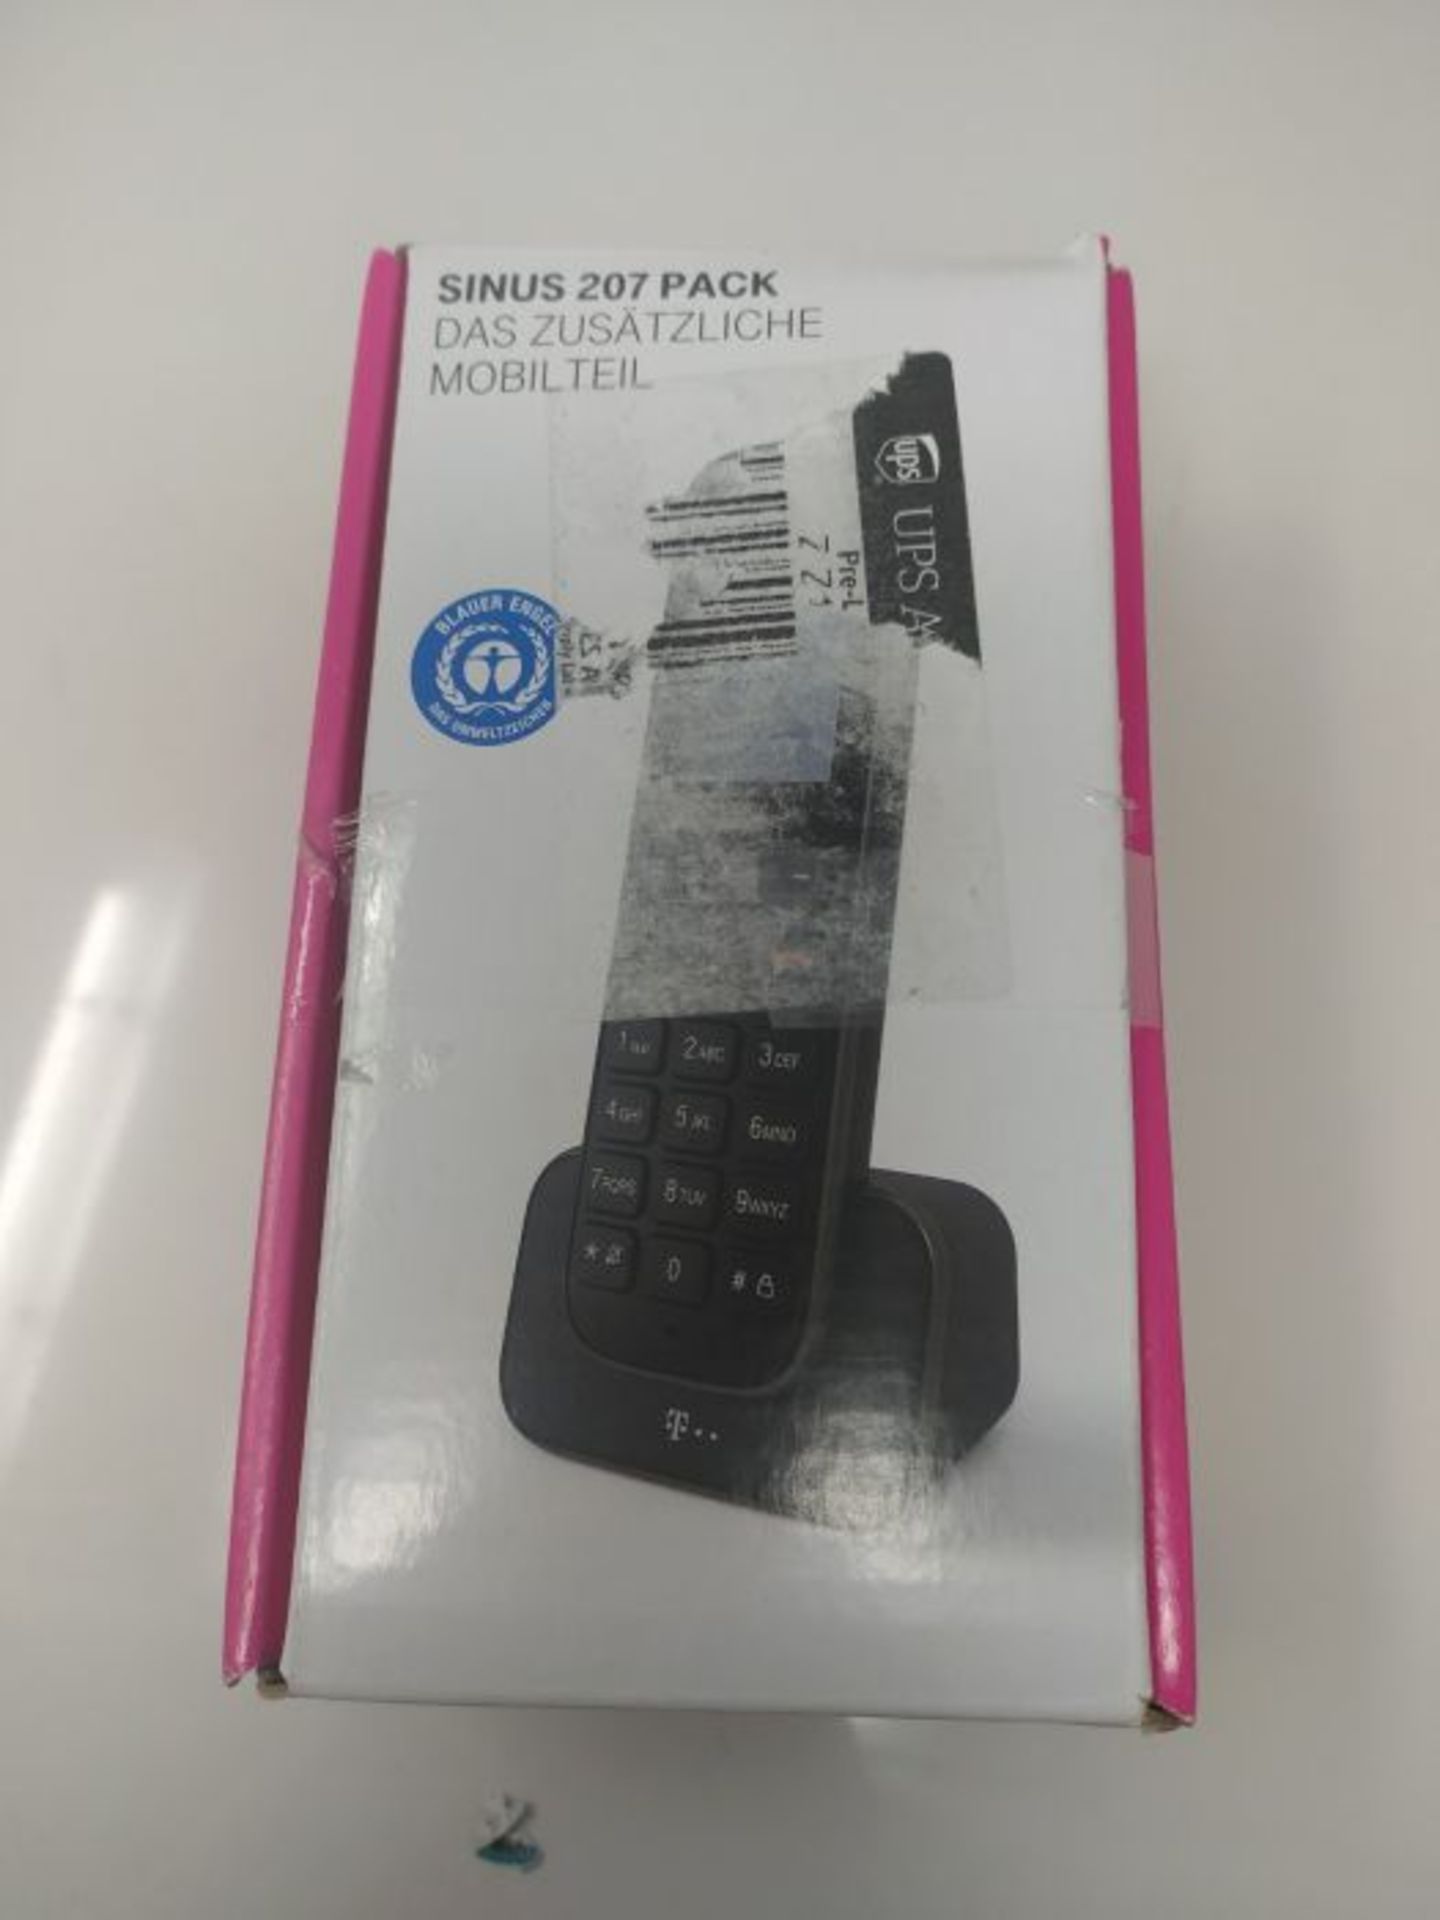 Telekom Erweiterungspack Sinus 207 Pack (Mobilteil und Ladeschale) schwarz - Image 2 of 3